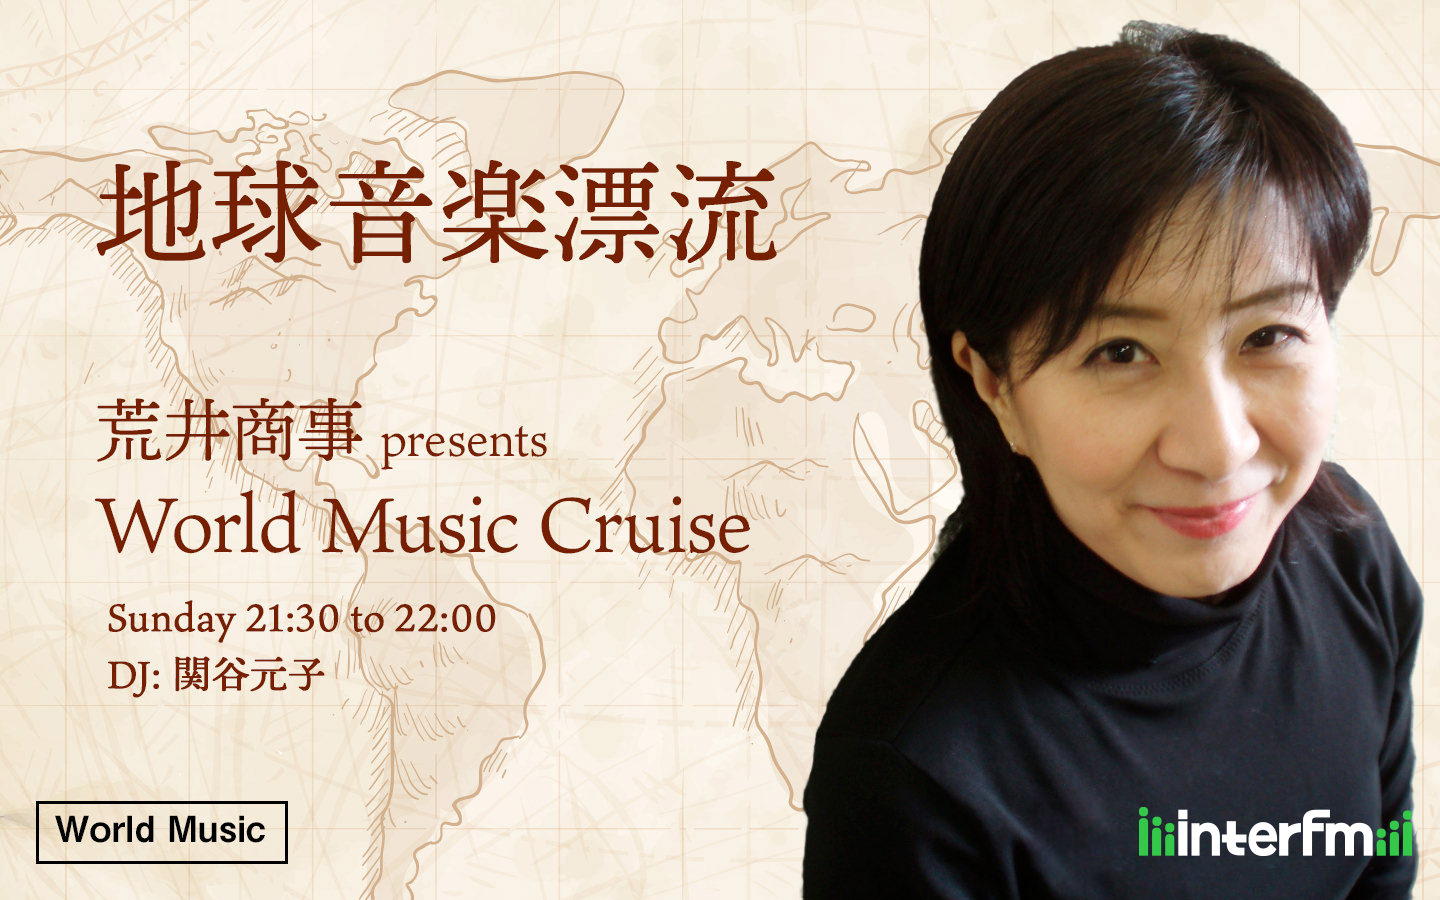 荒井商事 presents World Music Cruise